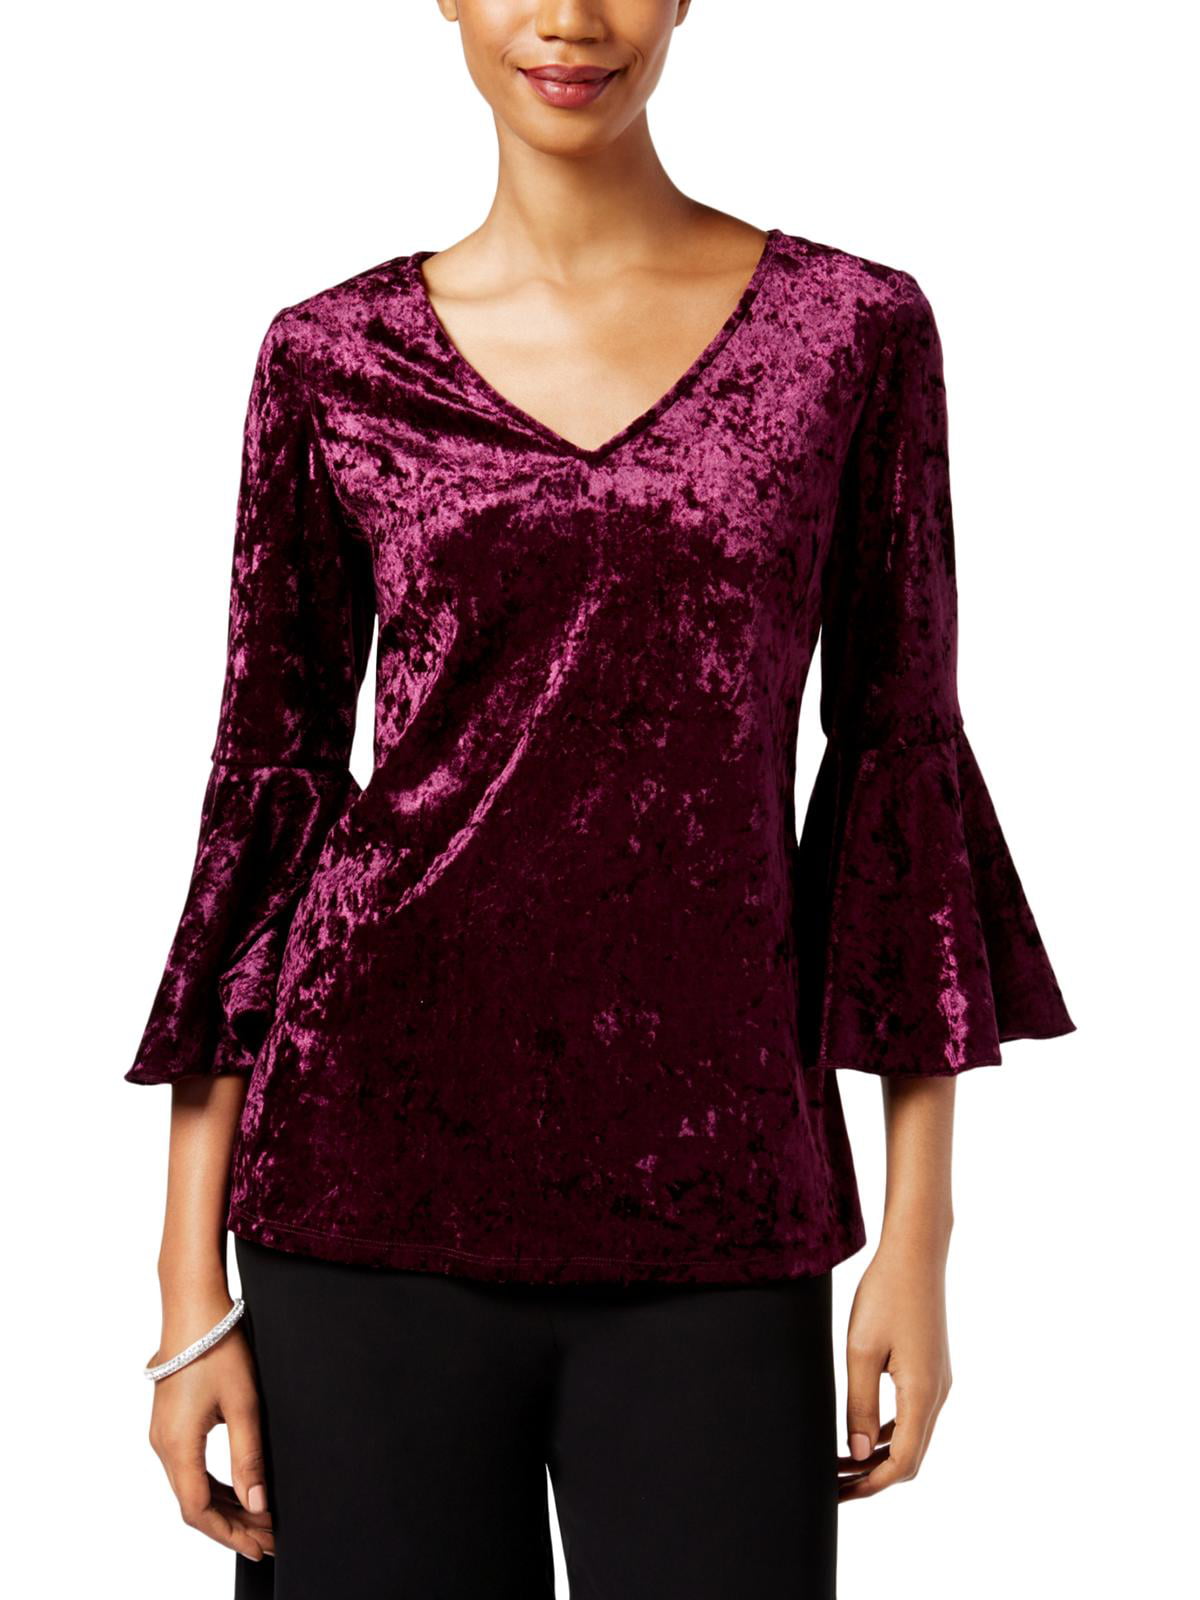 MSK - MSK Womens Purple Velvet Bell Sleeve V Neck Top Size L - Walmart ...